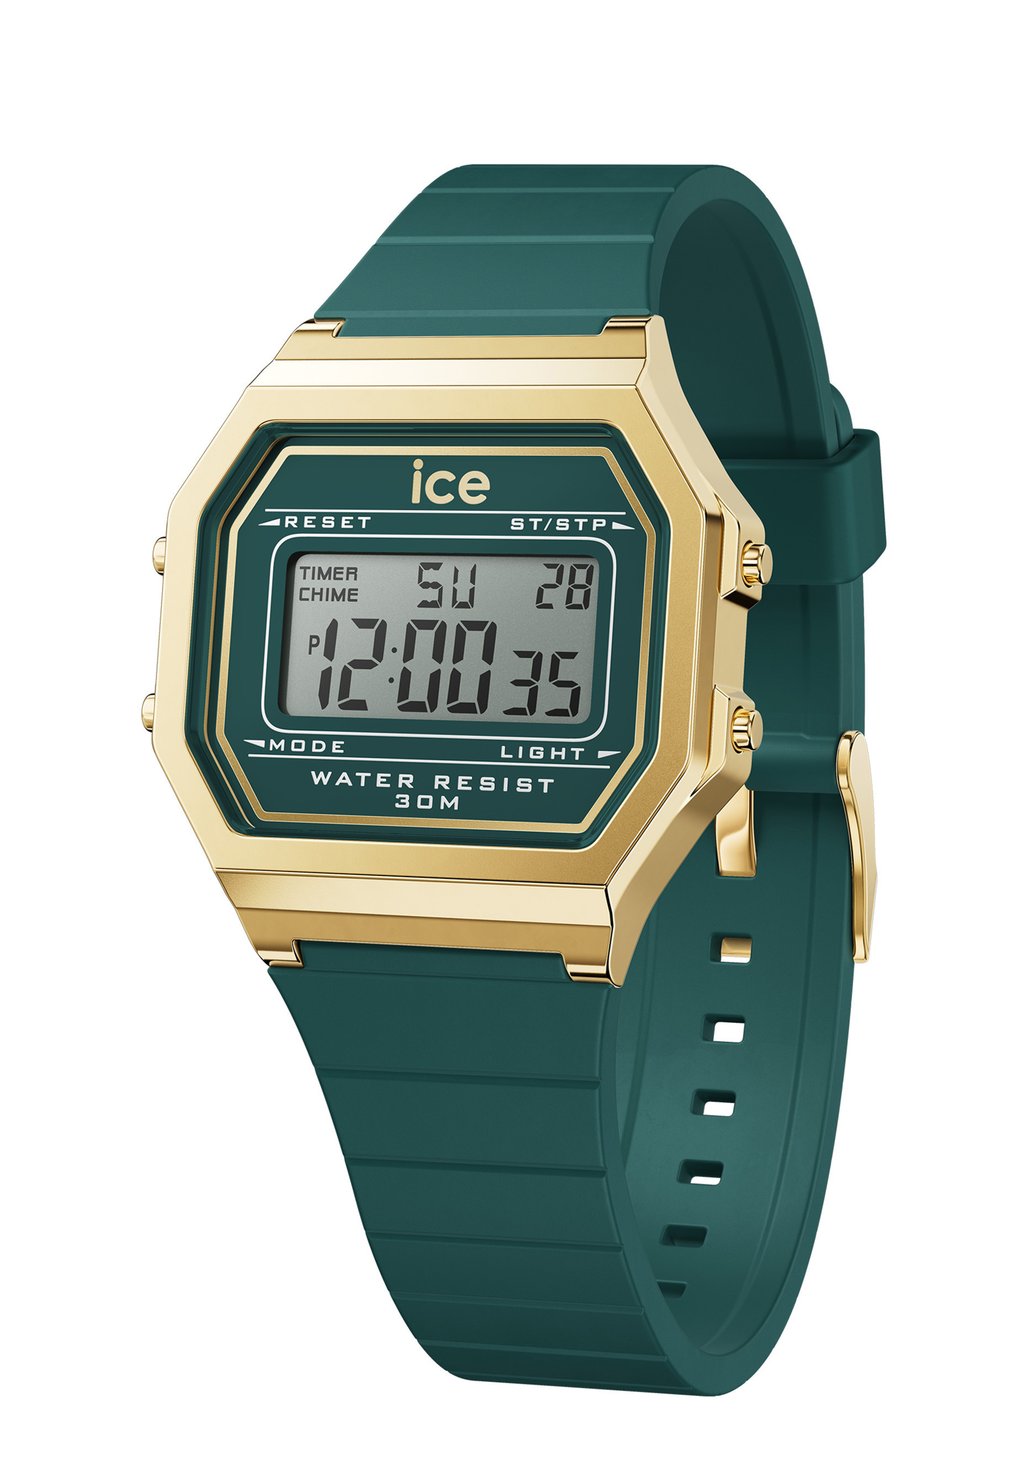 Цифровые часы DIGIT RETRO Ice-Watch, цвет verdigris s цена и фото